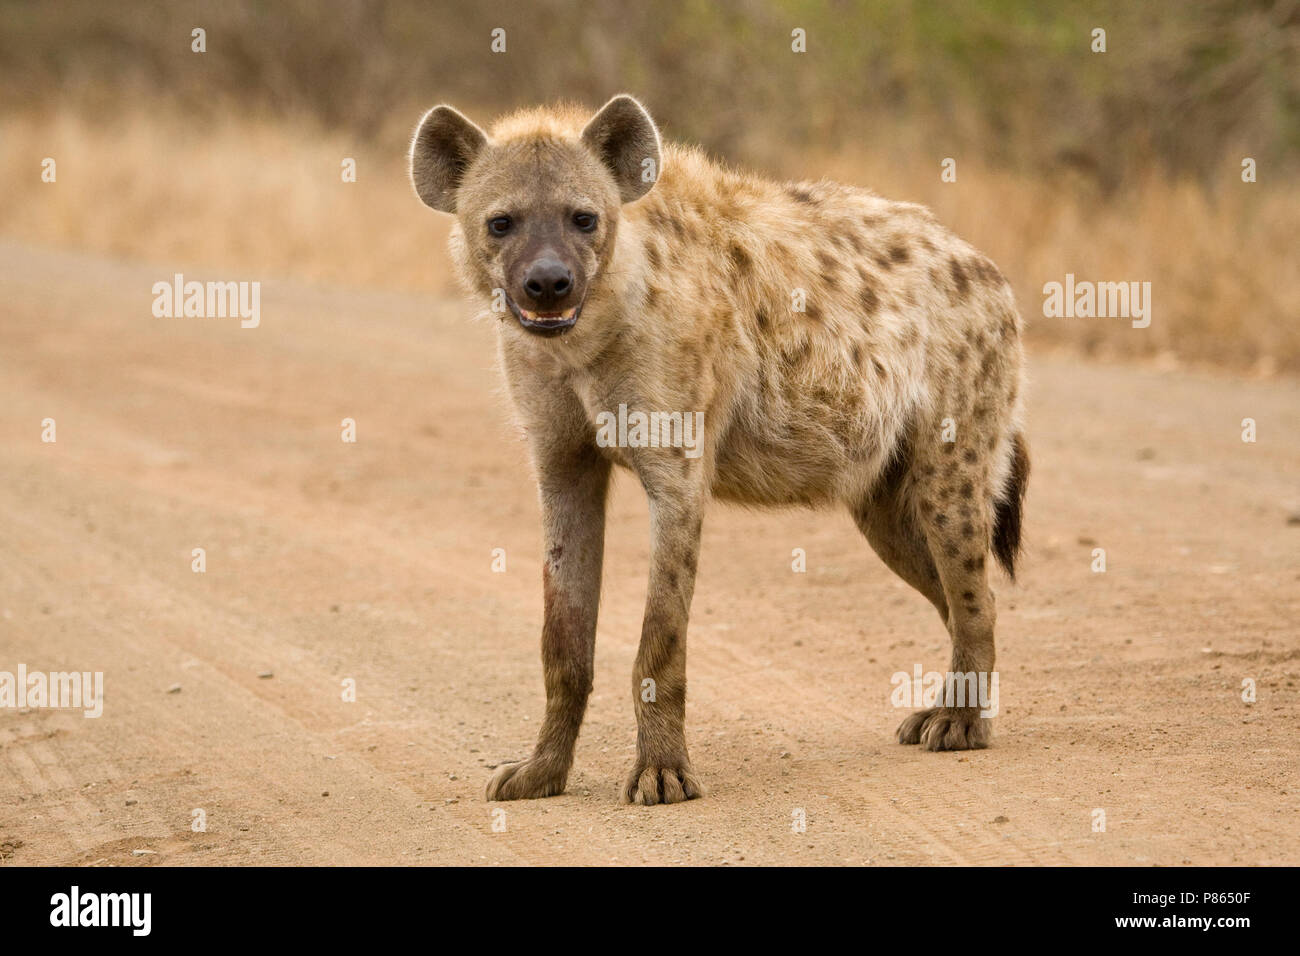 Gevlekte Hyena op de weg; Spotted Hyena on the road Stock Photo